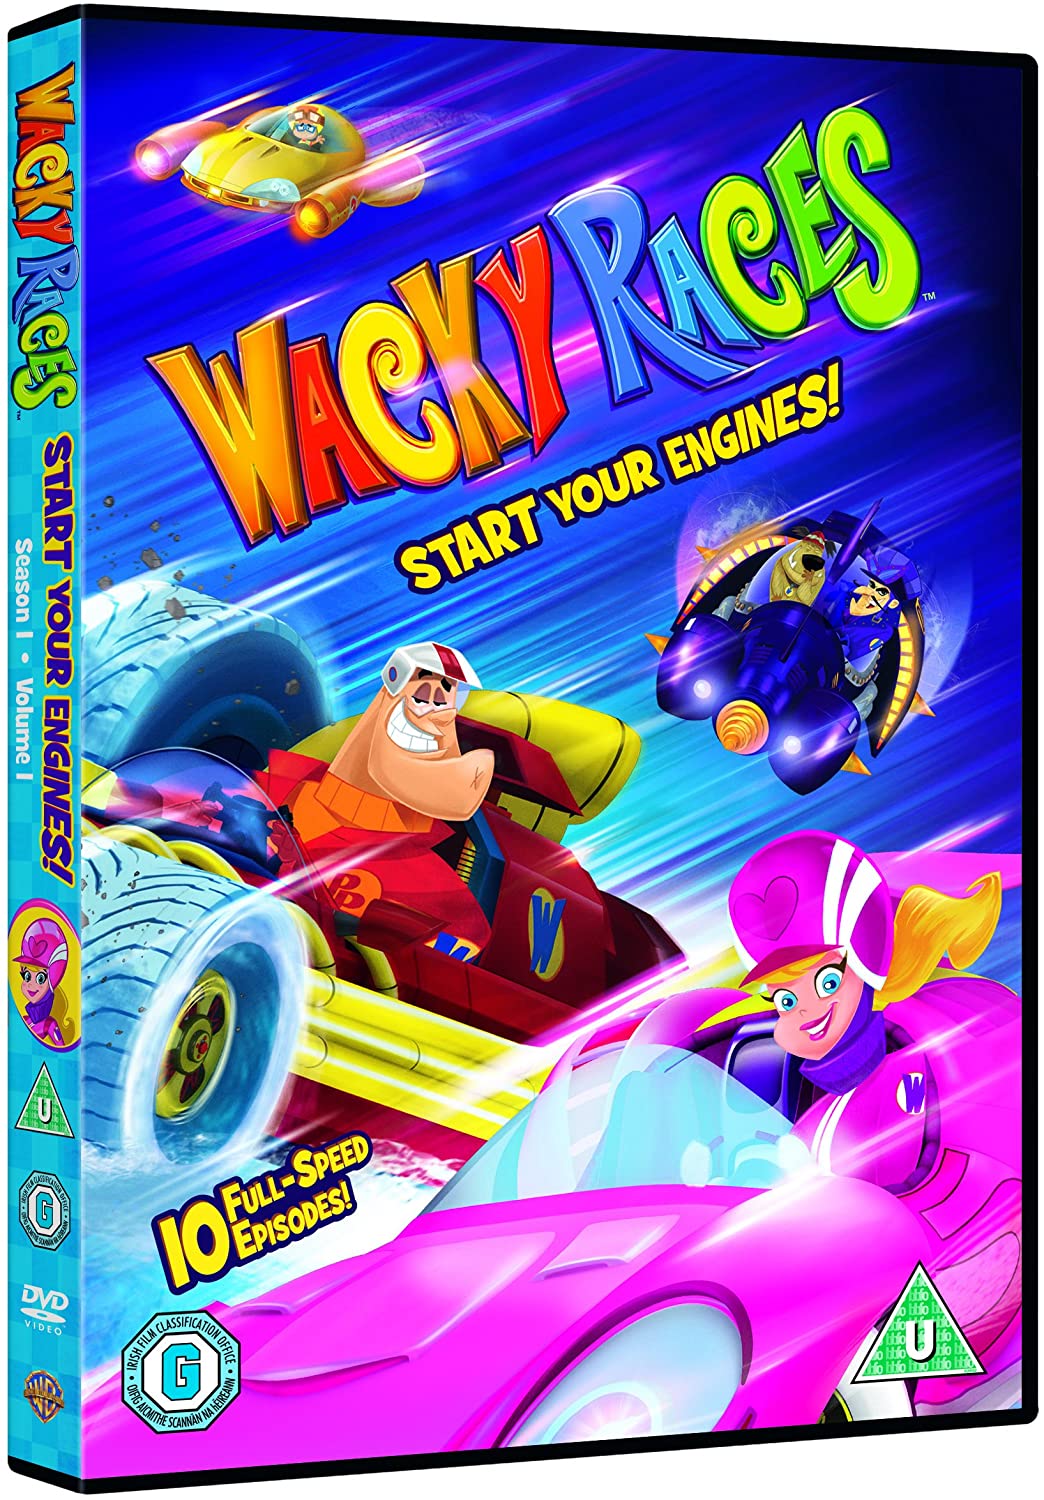 Wacky Races V1 S) [2018] - Animation [DVD]